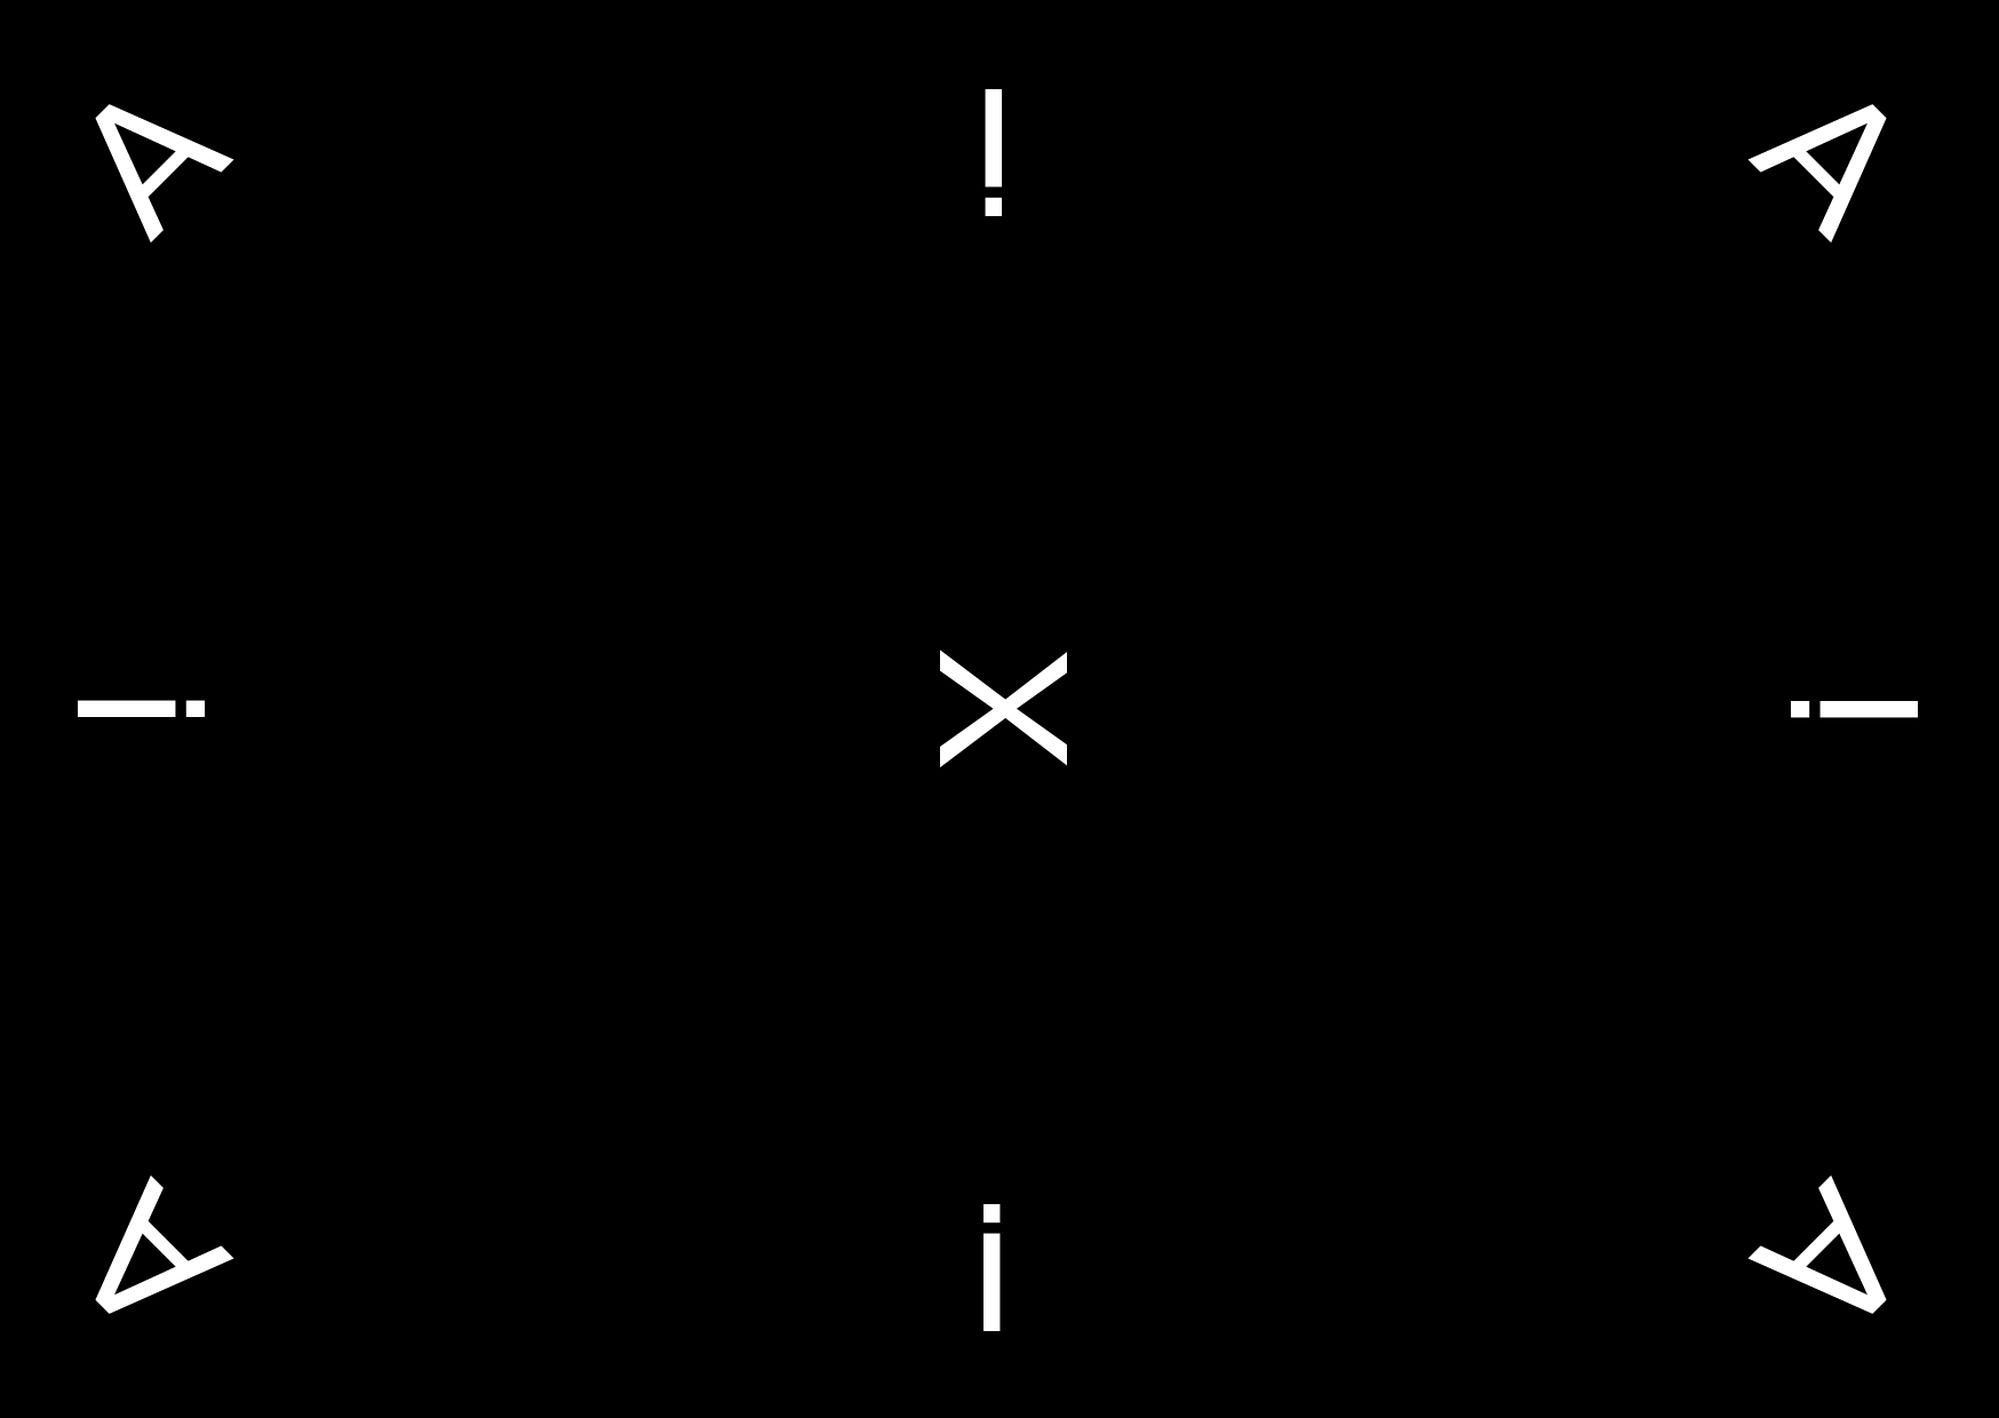 Черный фон, белые  буквы «А» по углам, между ними восклицательные знаки и буква «Х» в центре